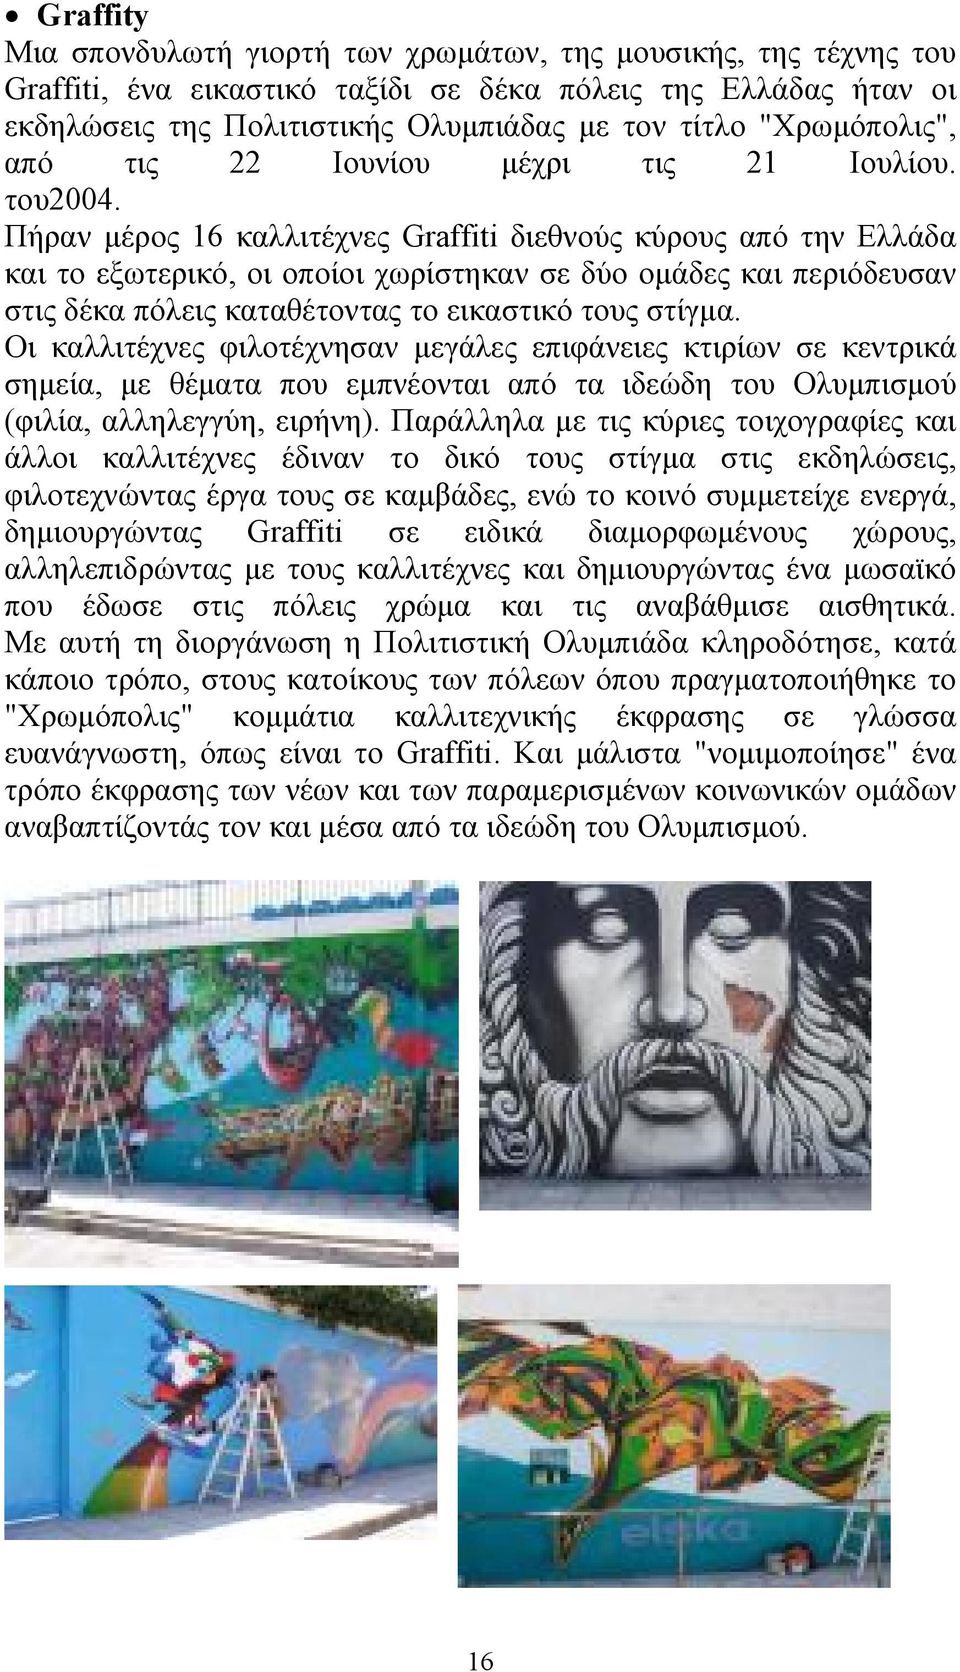 Πήραν μέρος 16 καλλιτέχνες Graffiti διεθνούς κύρους από την Ελλάδα και το εξωτερικό, οι οποίοι χωρίστηκαν σε δύο ομάδες και περιόδευσαν στις δέκα πόλεις καταθέτοντας το εικαστικό τους στίγμα.